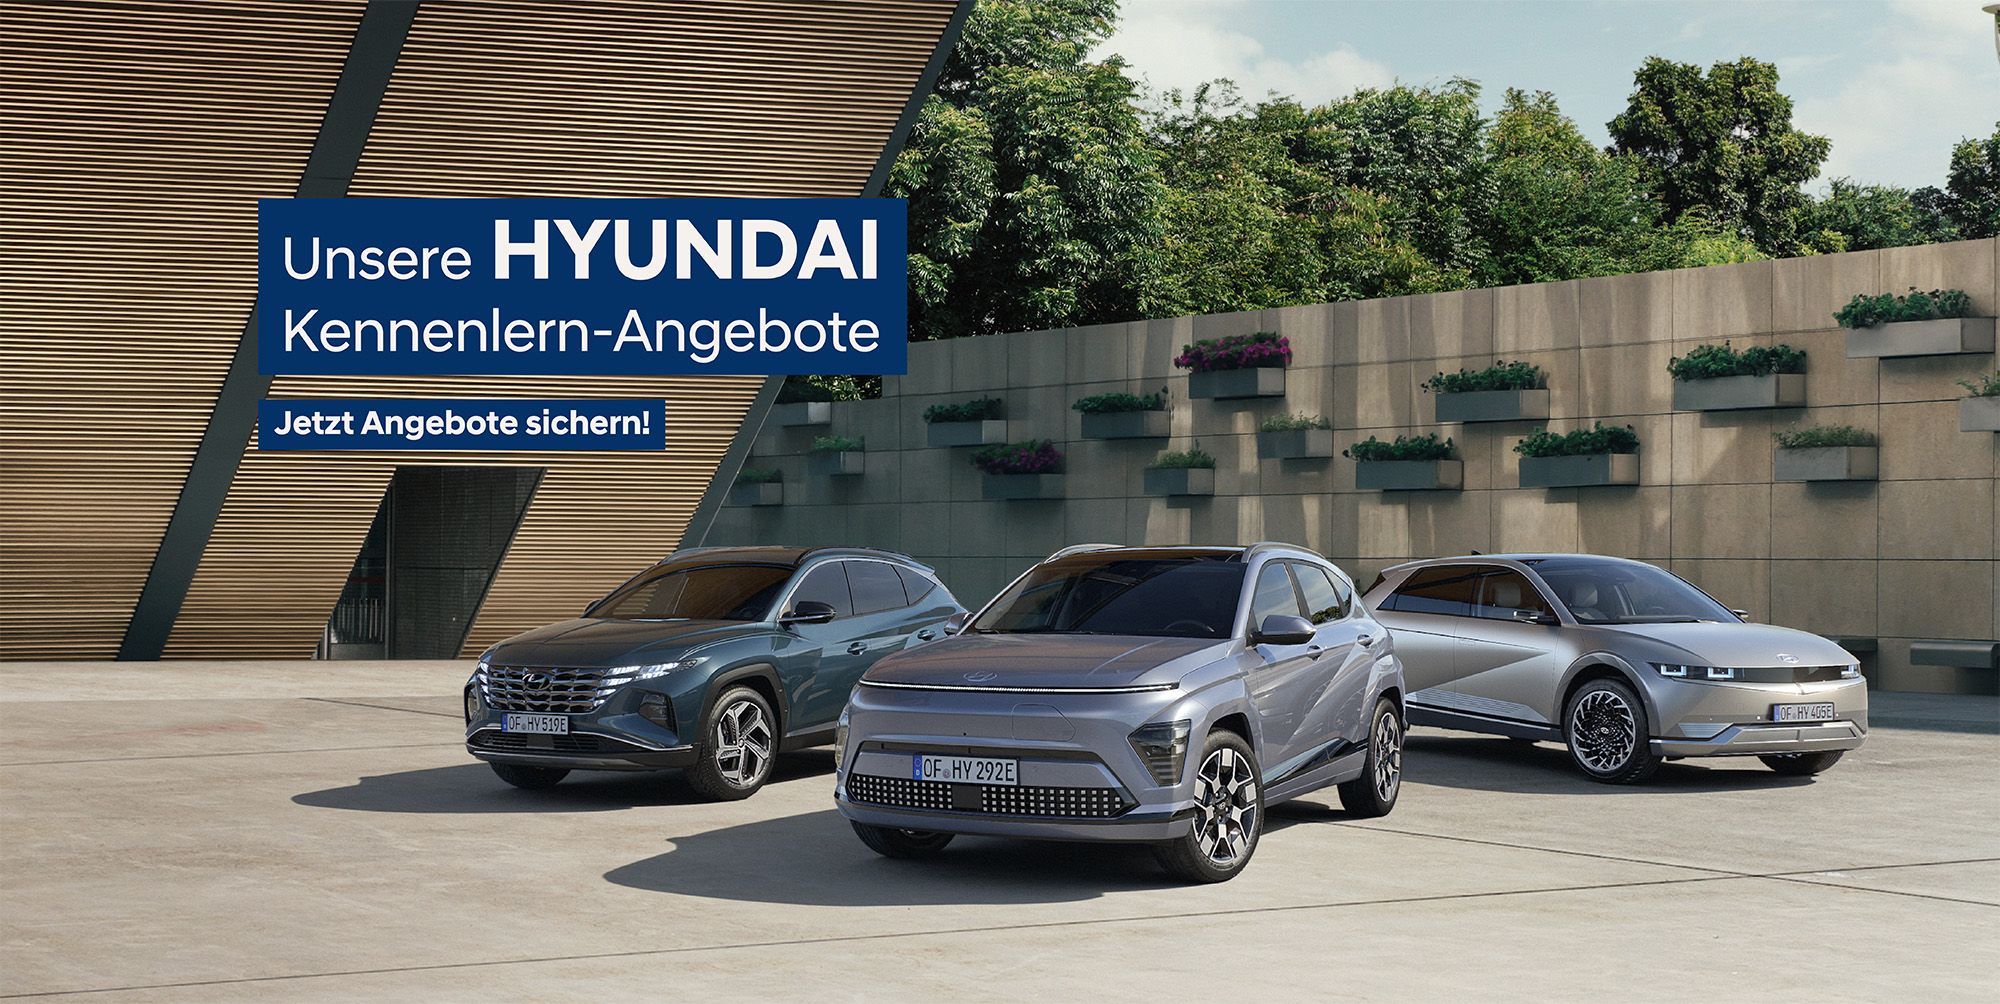 Hyundai Kennenlern-Angebote im Autohaus SCHADE 